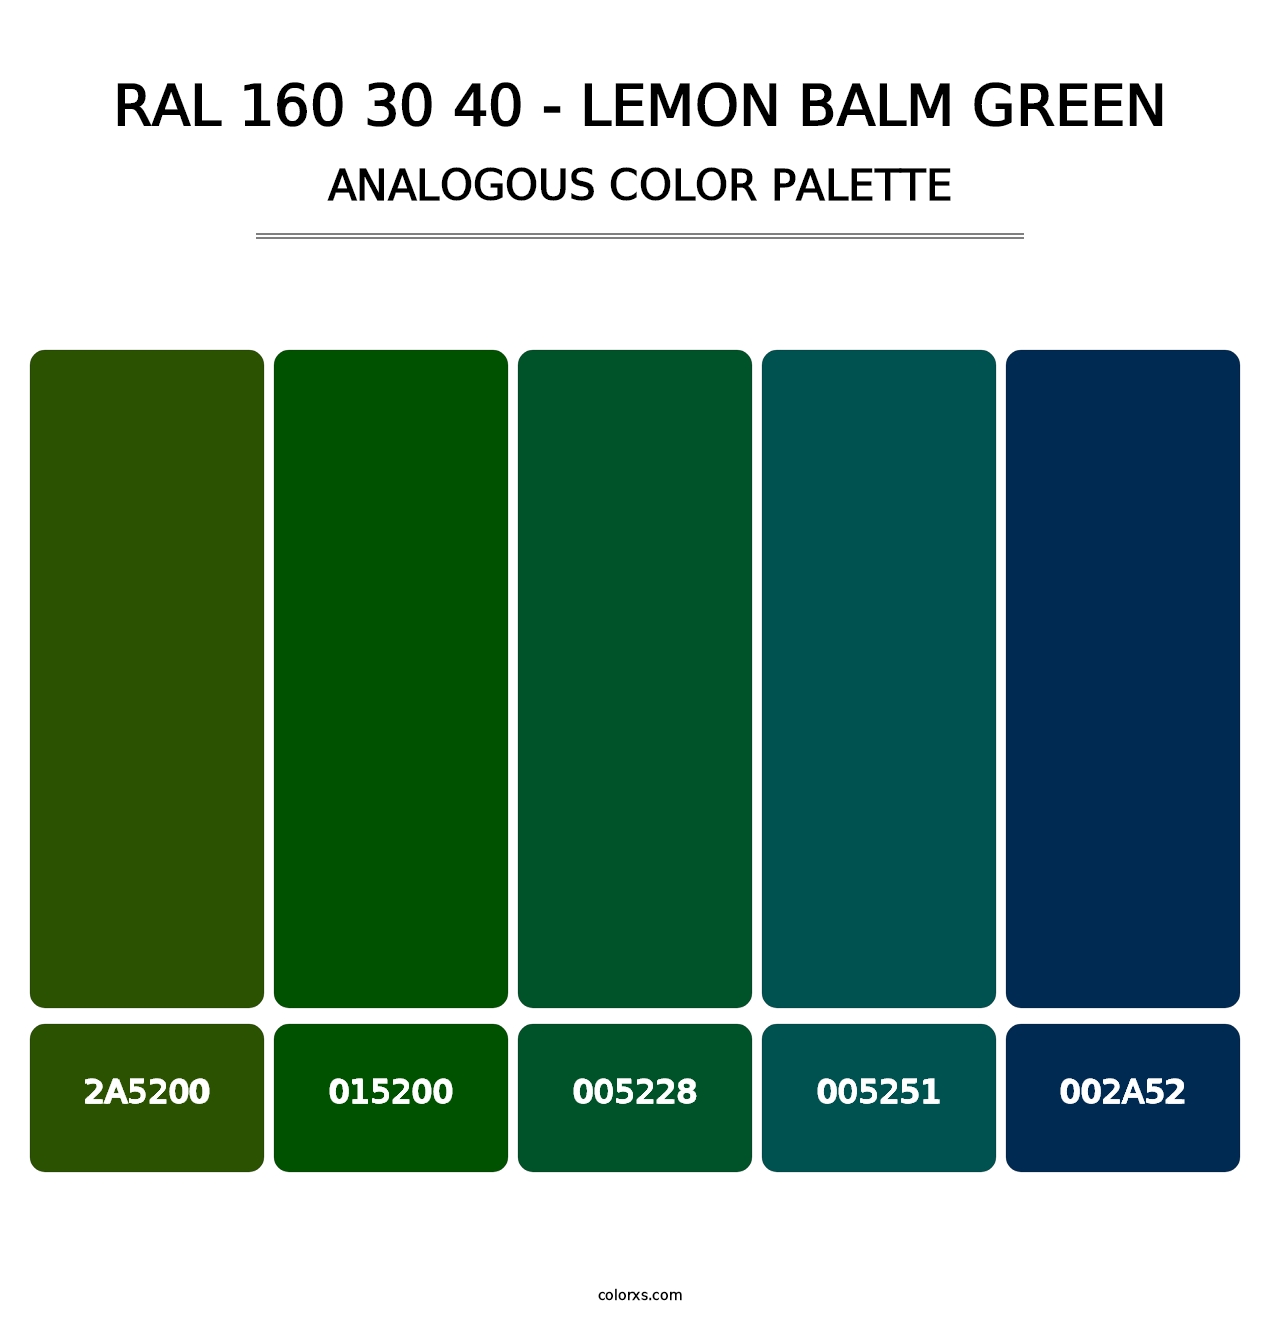 RAL 160 30 40 - Lemon Balm Green - Analogous Color Palette